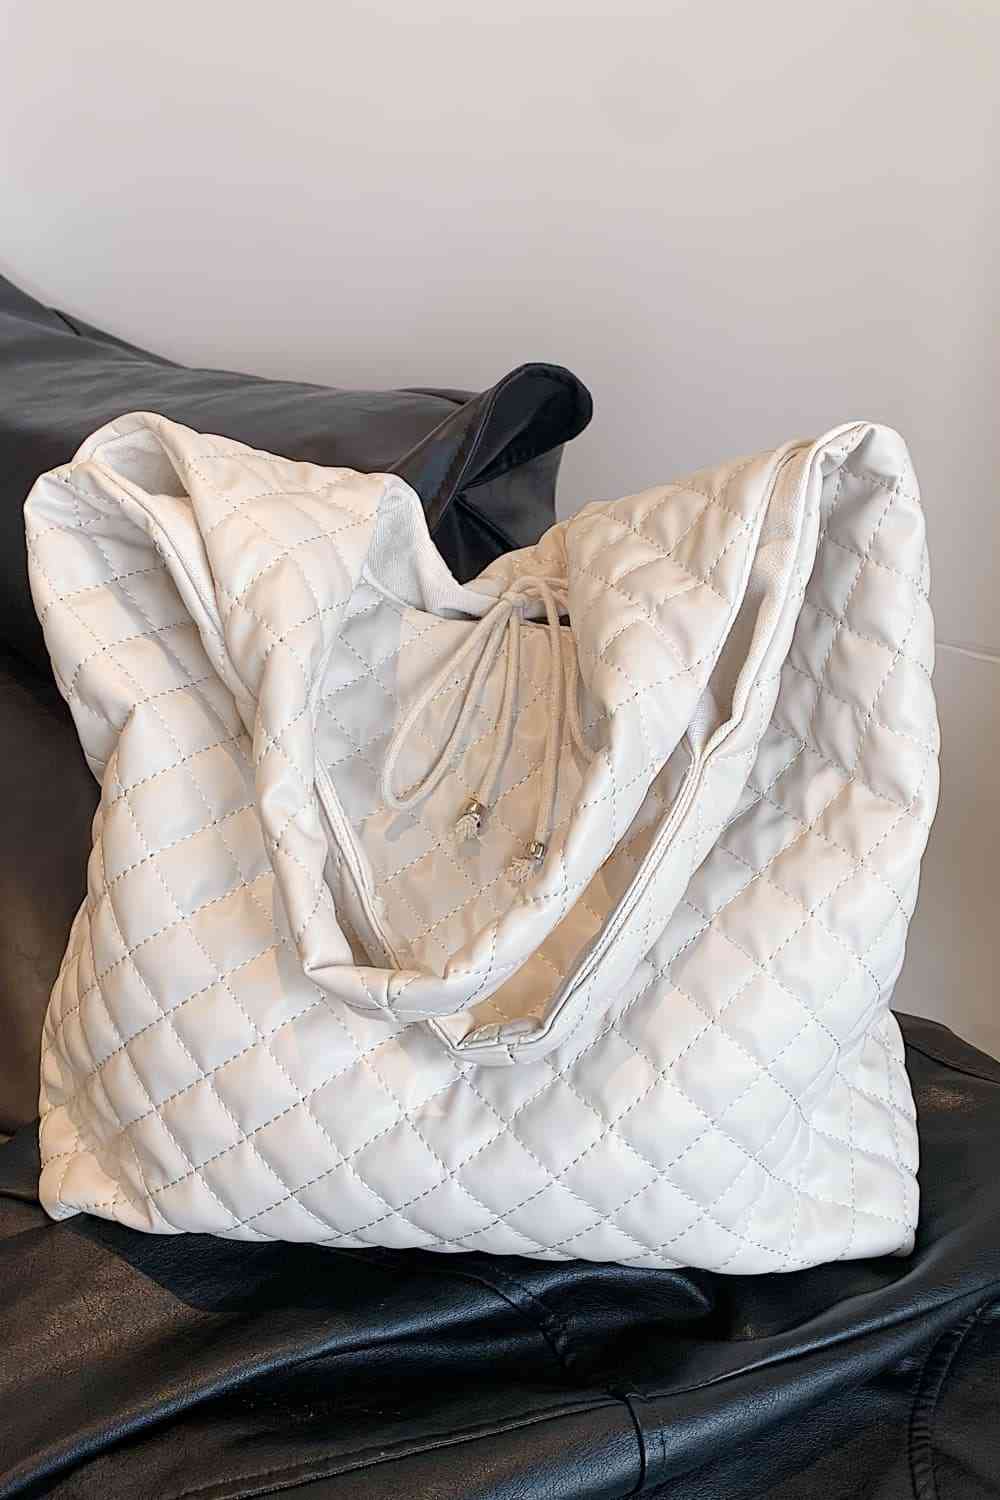 TEEK - Woven PU Leather Handbag BAG TEEK Trend   